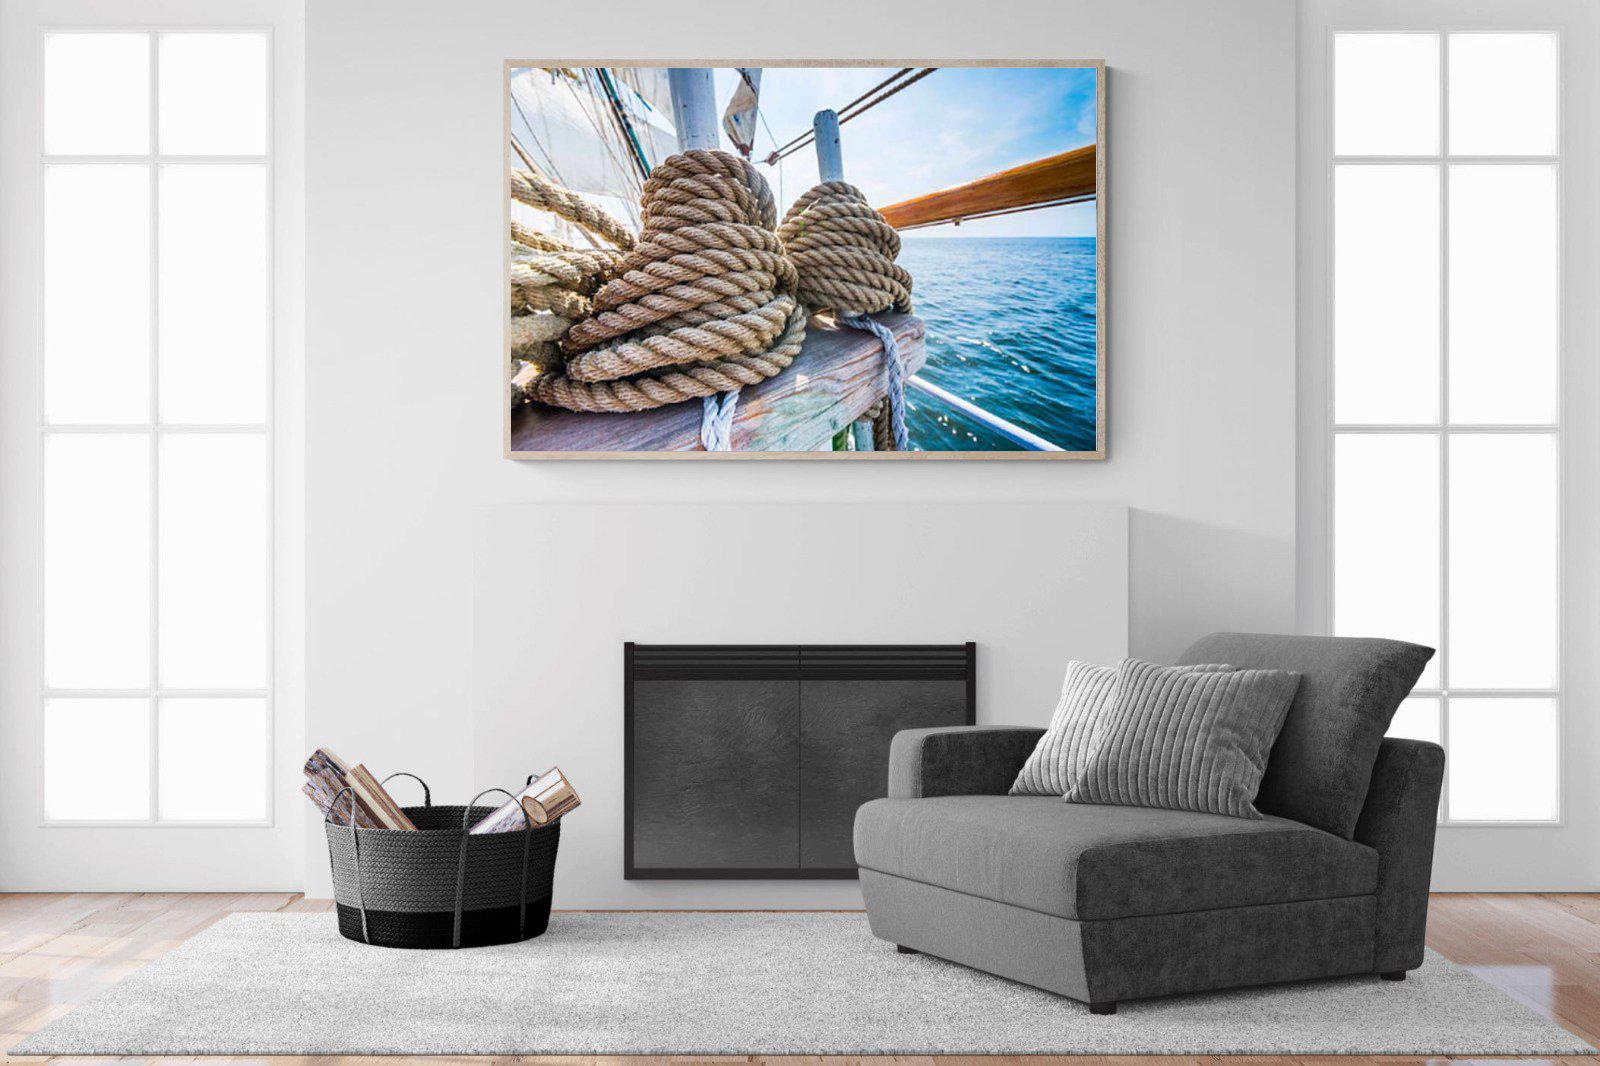 Set Sail-Wall_Art-150 x 100cm-Mounted Canvas-Wood-Pixalot